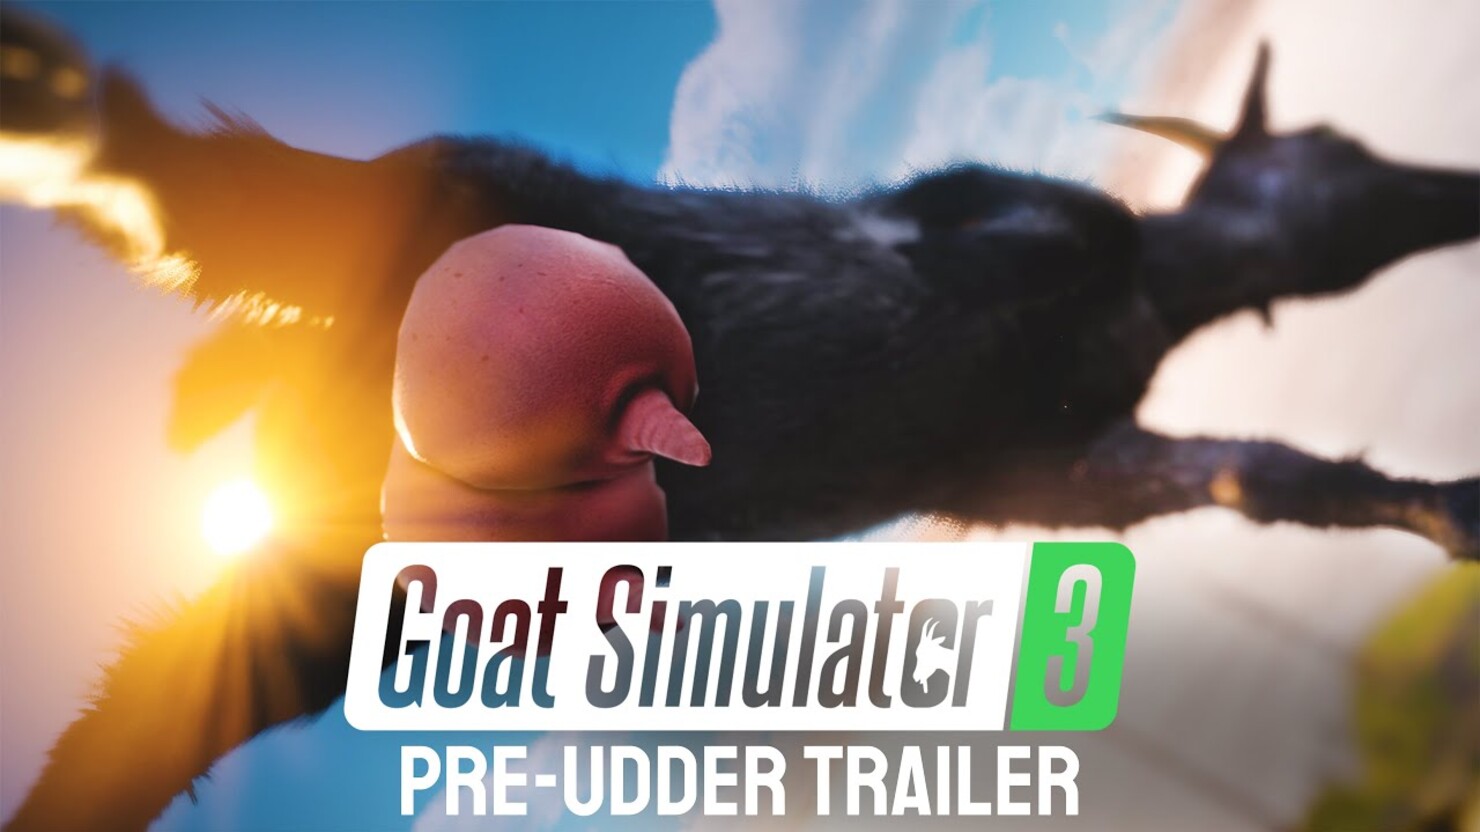 У Goat Simulator 3 появилась дата выхода